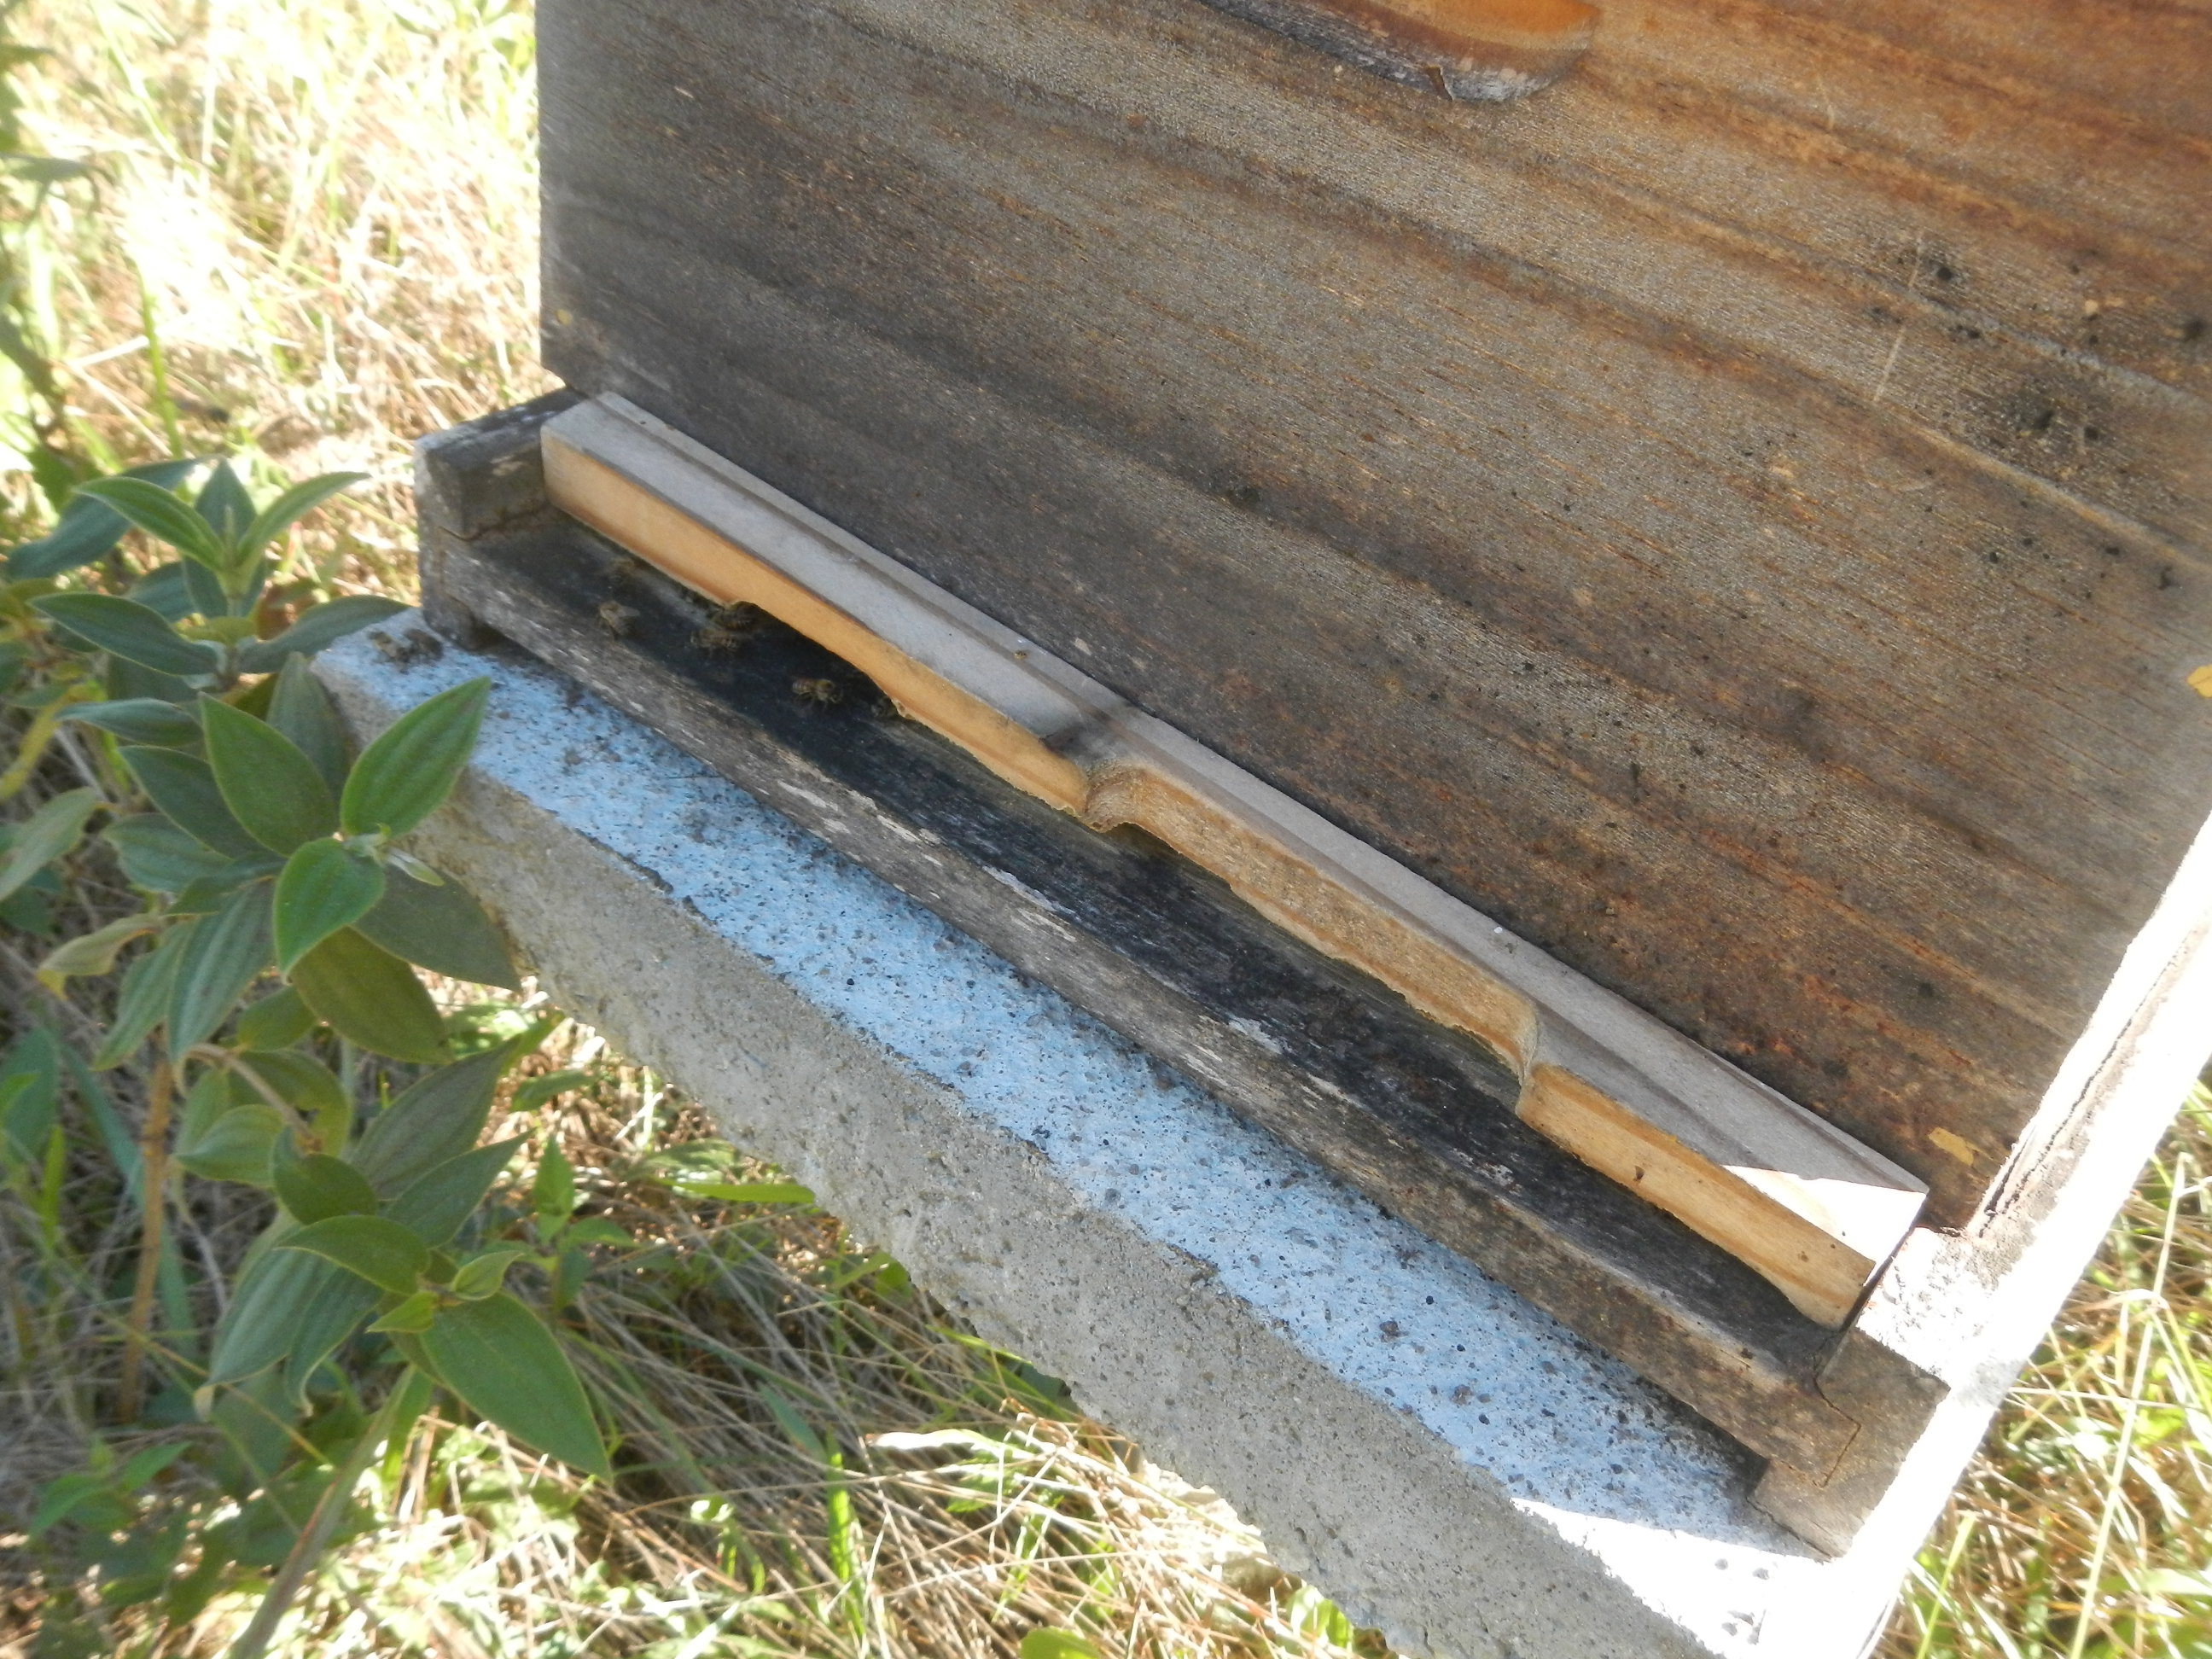 20160822 Fazenda visita rotina apiário apicultura caixas abelhas 002.jpg